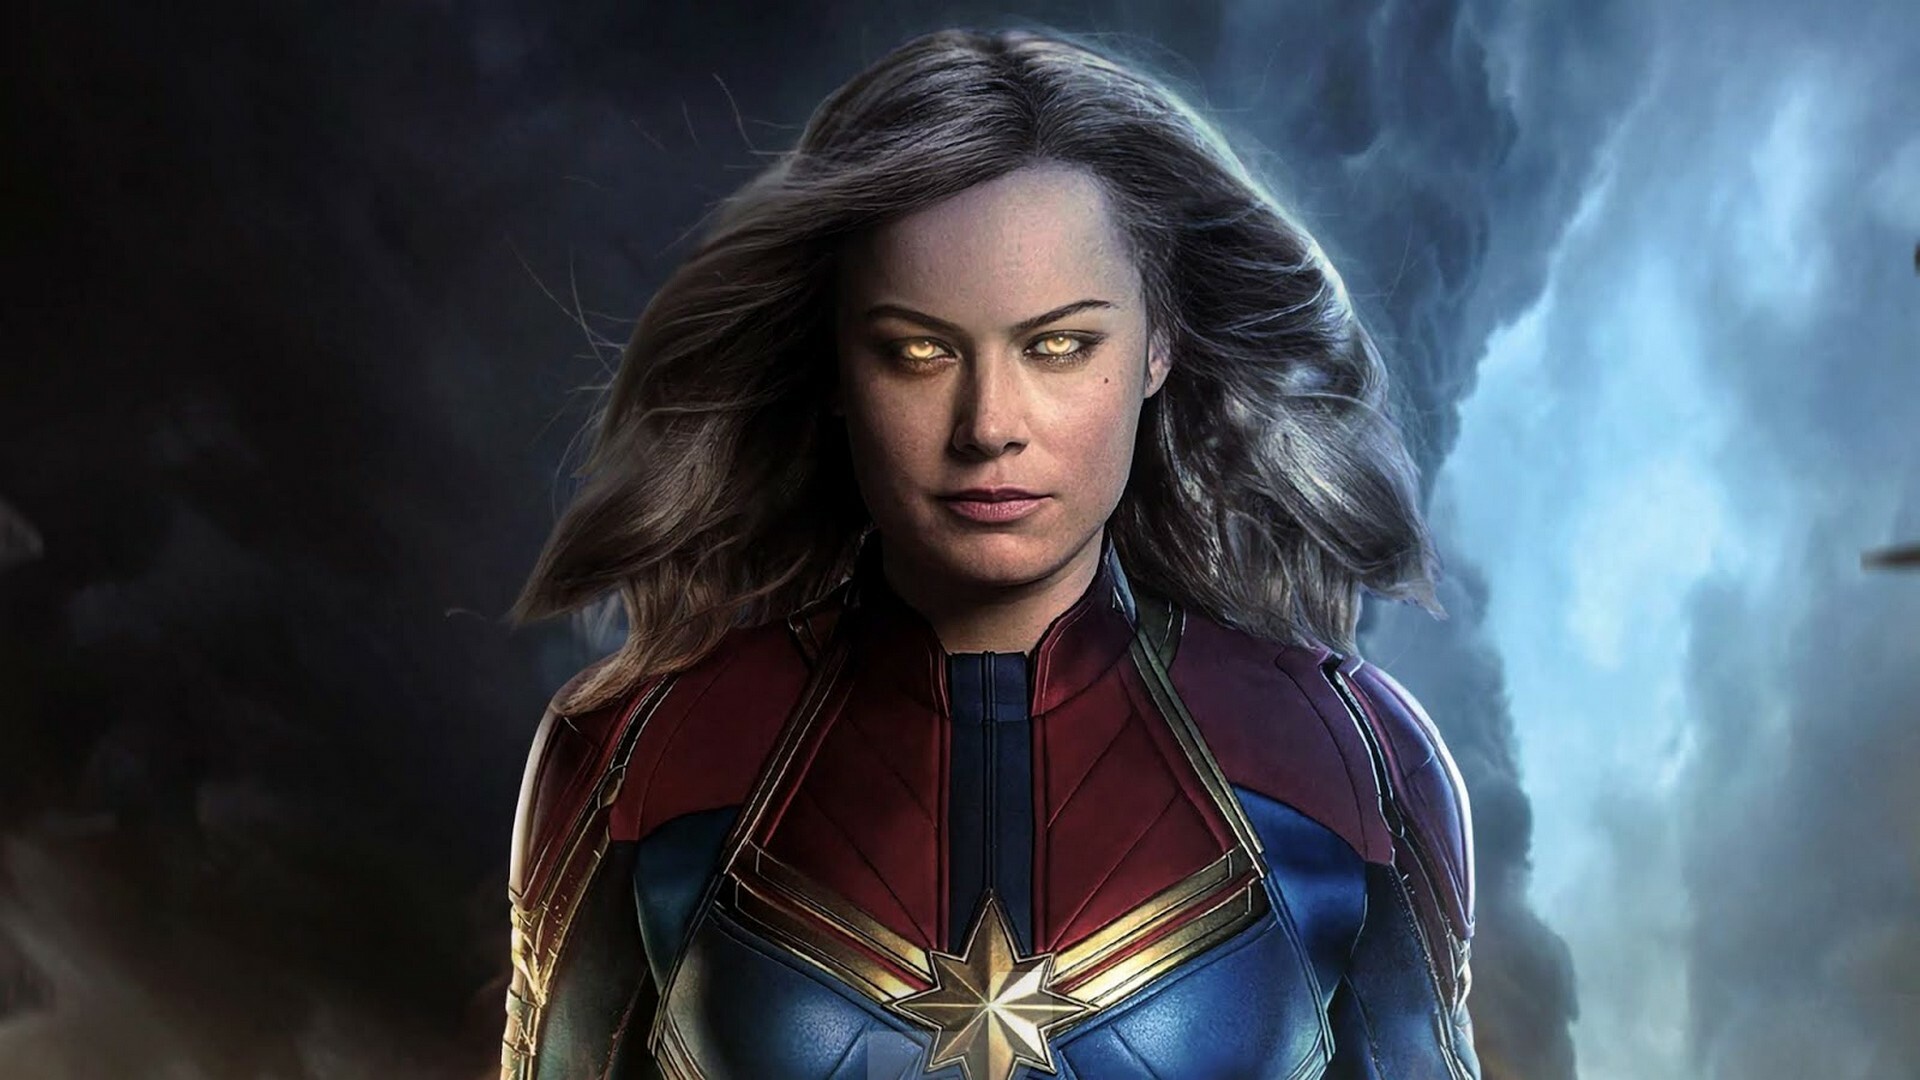 Captain Marvel: Carol Danvers, swaps places with Kamala Khan in 2025. 1920x1080 Full HD Wallpaper.